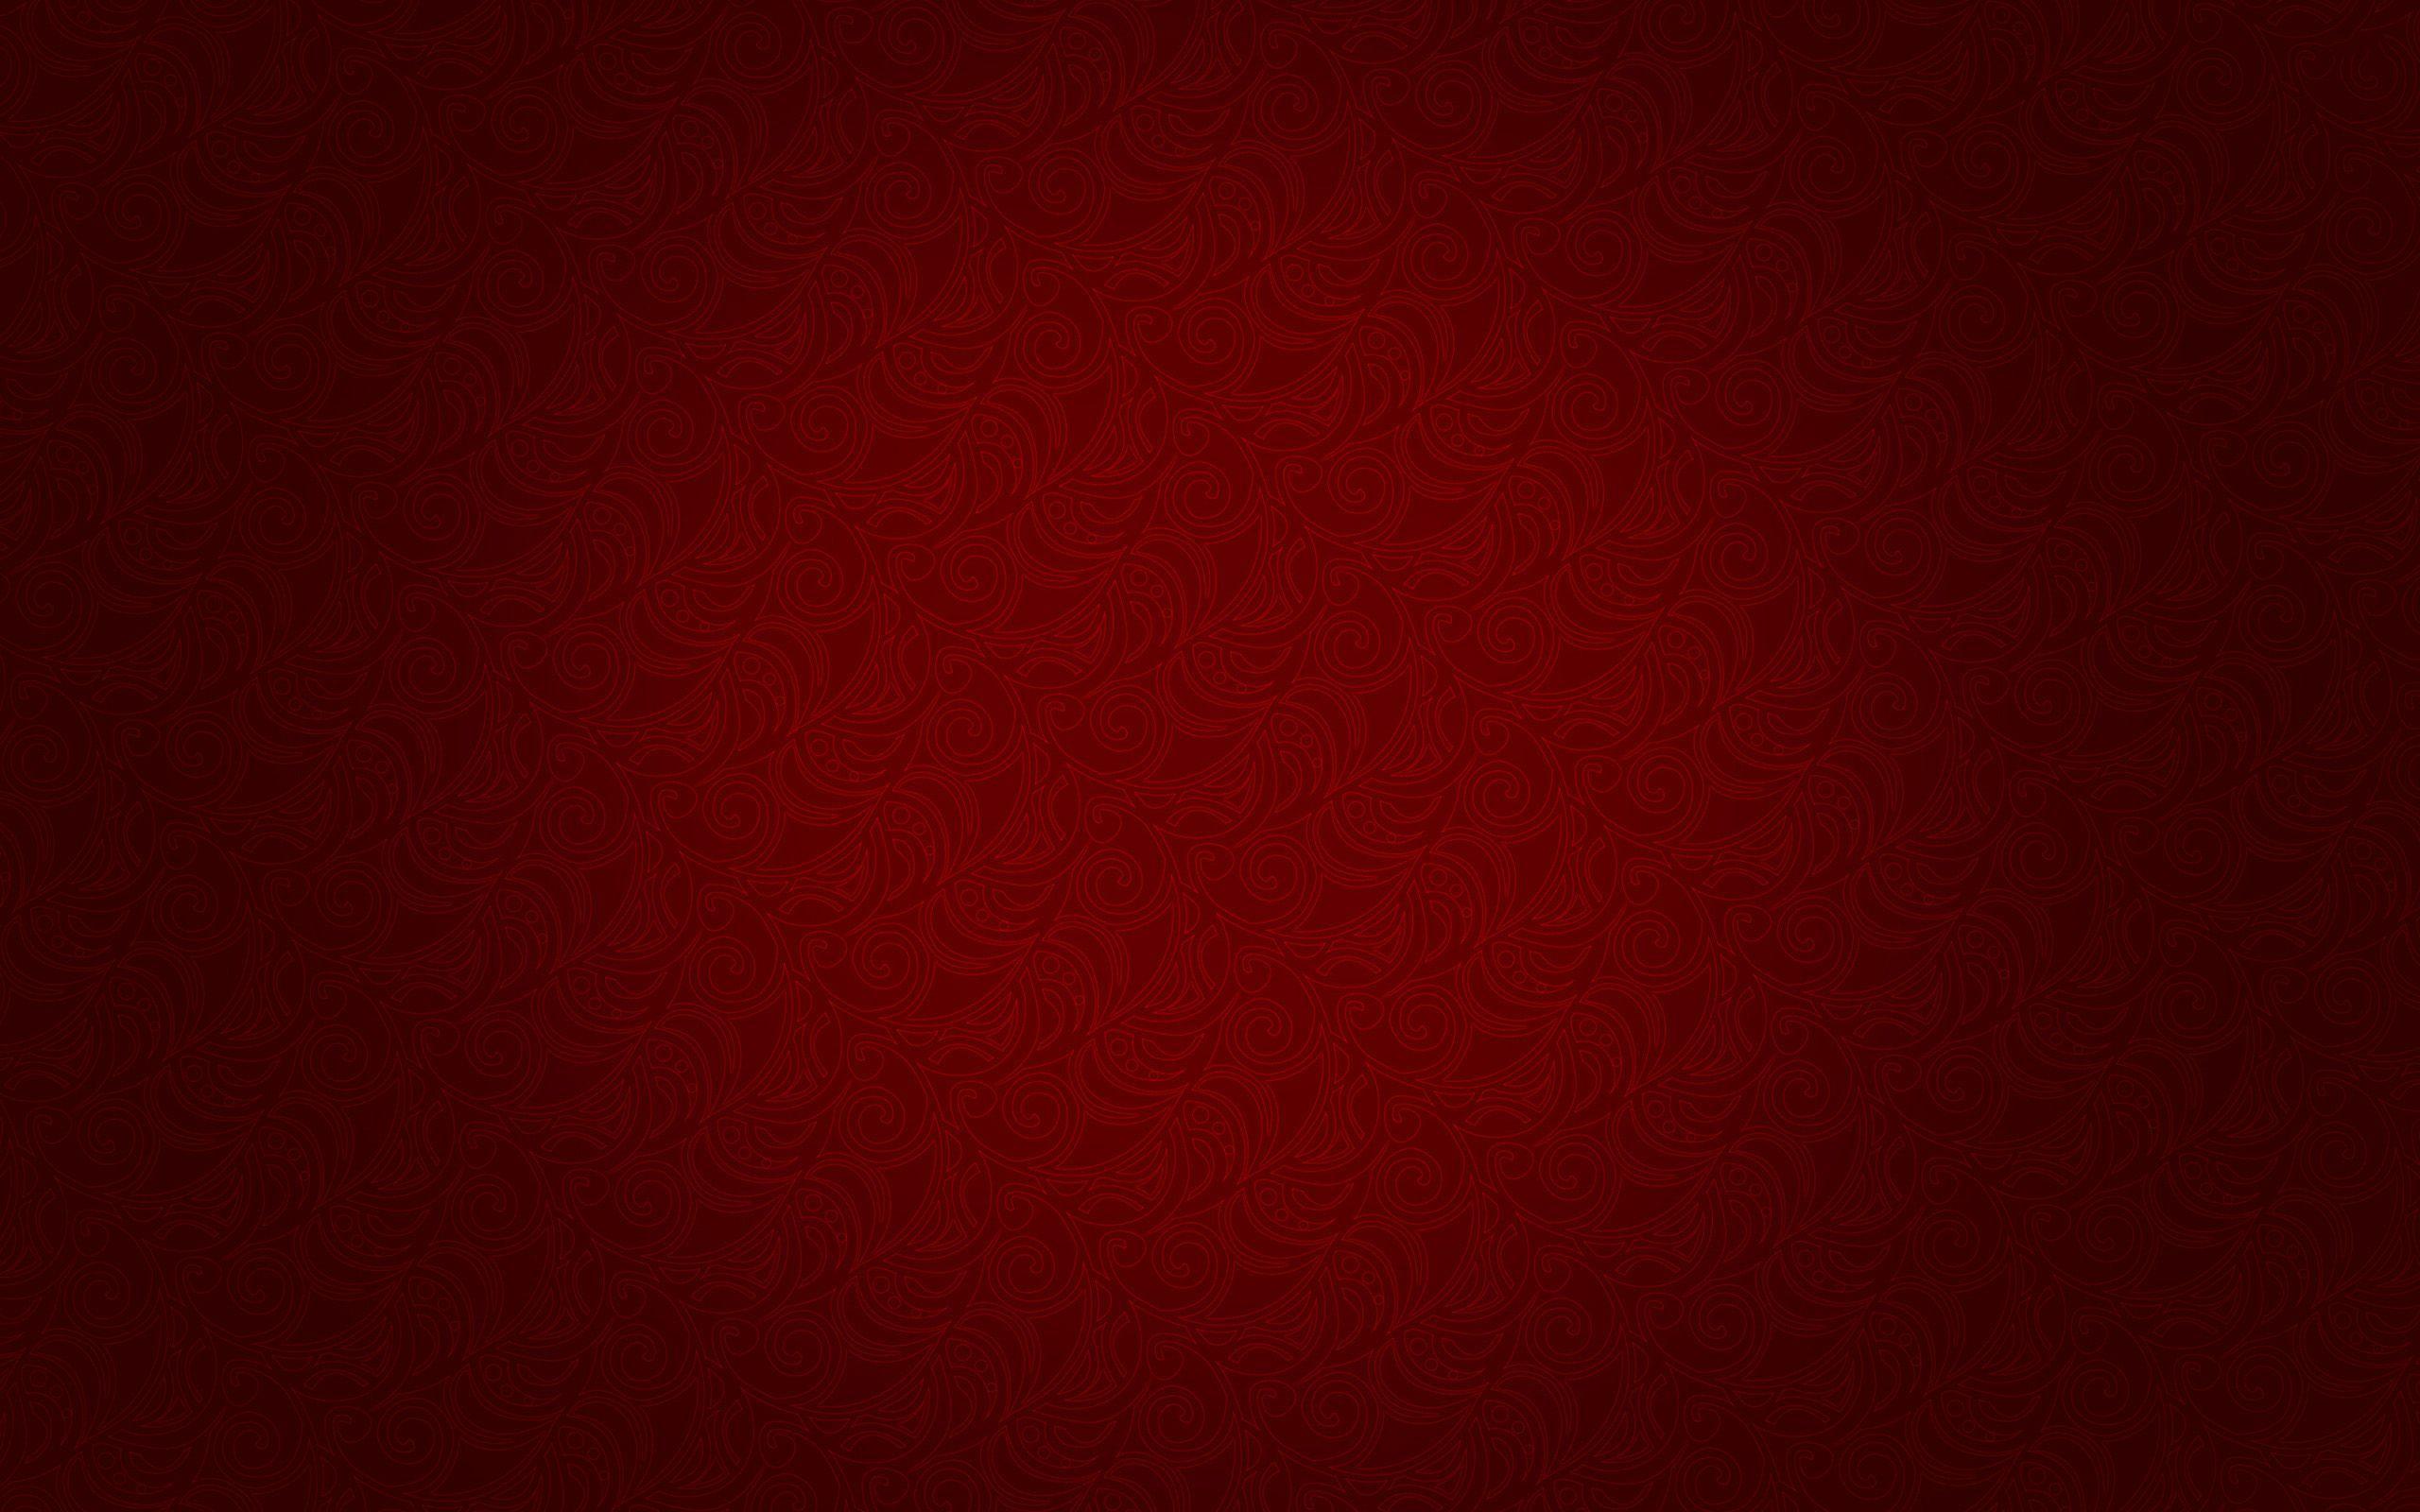 Red Texture Wallpaper HD Resolution For Desktop Wallpaper 2560 x